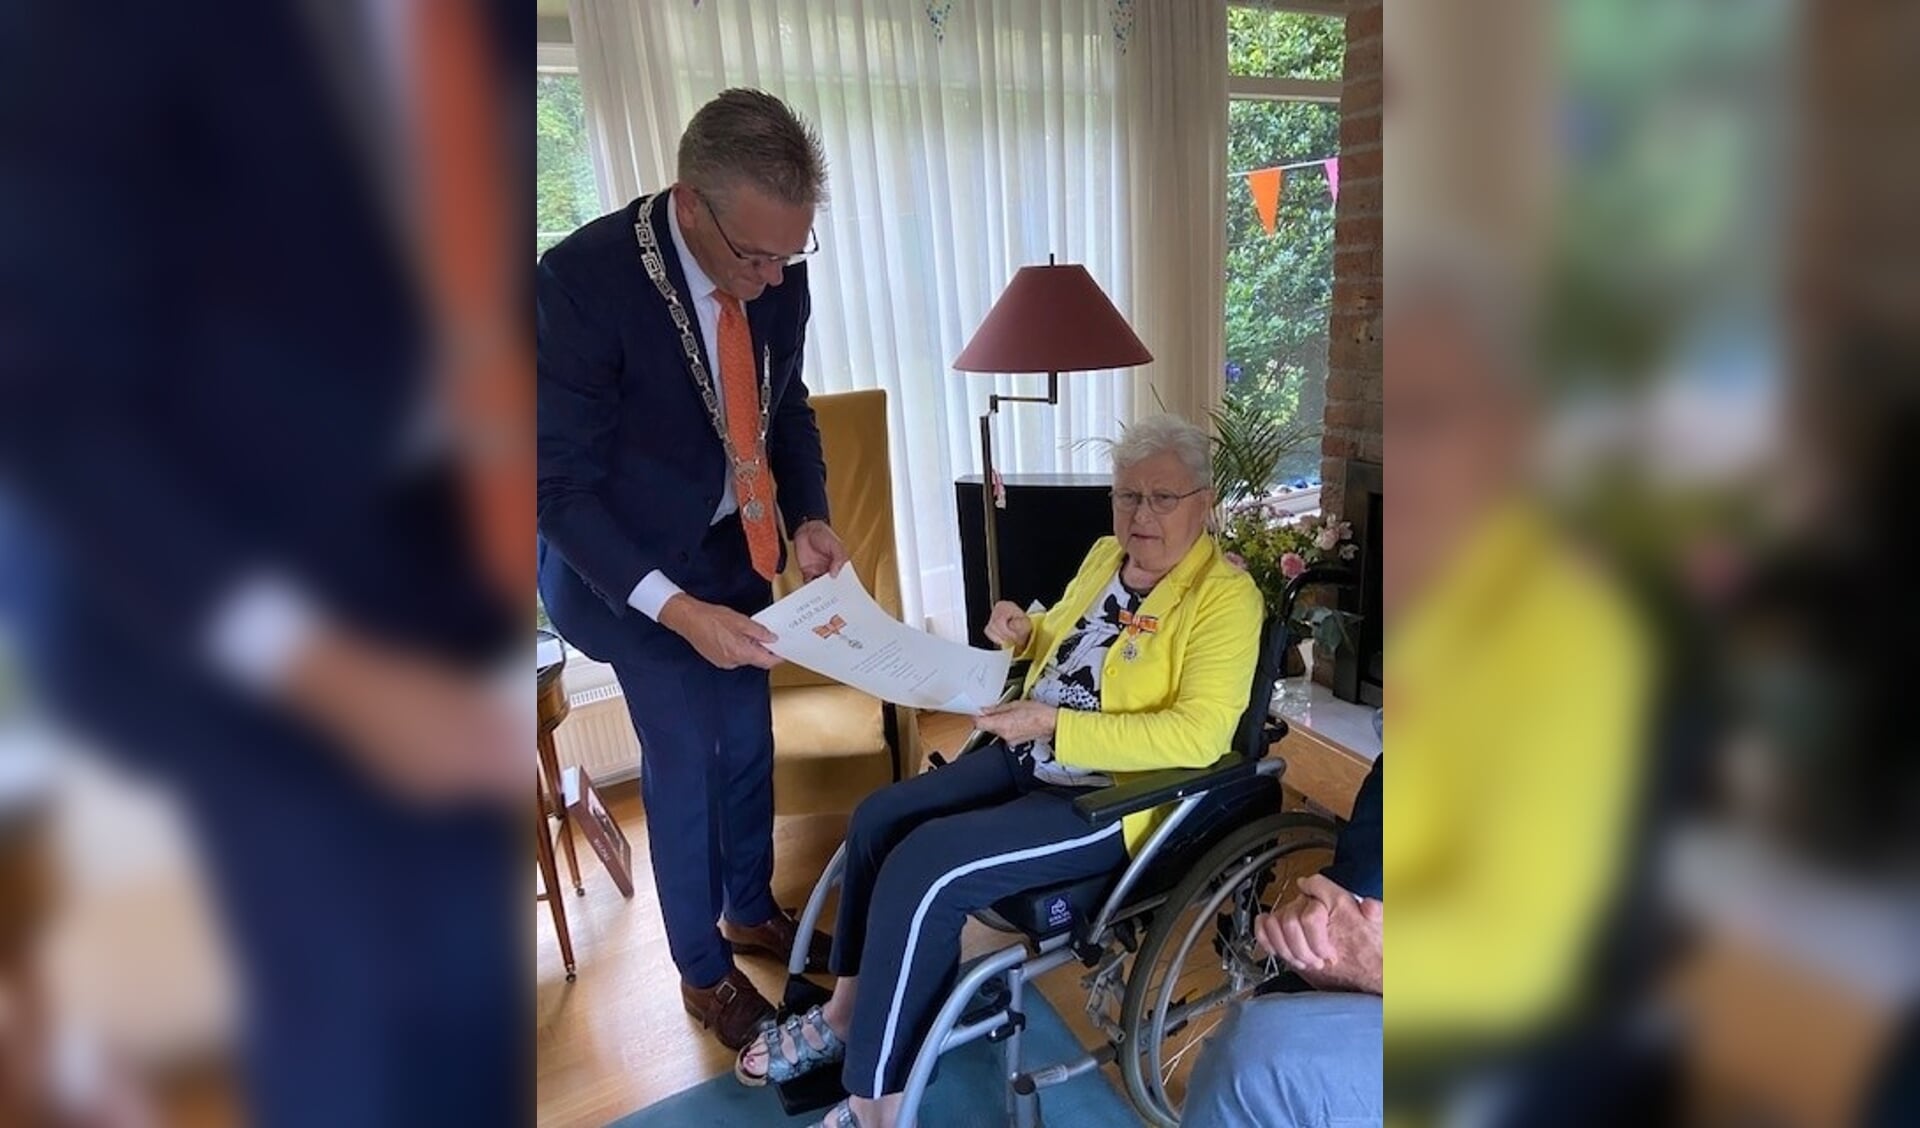 Burgemeester Jeroen Gebben reikt de koninklijke onderscheiding uit aan mevrouw Hitje Dankert-Hoekstra.